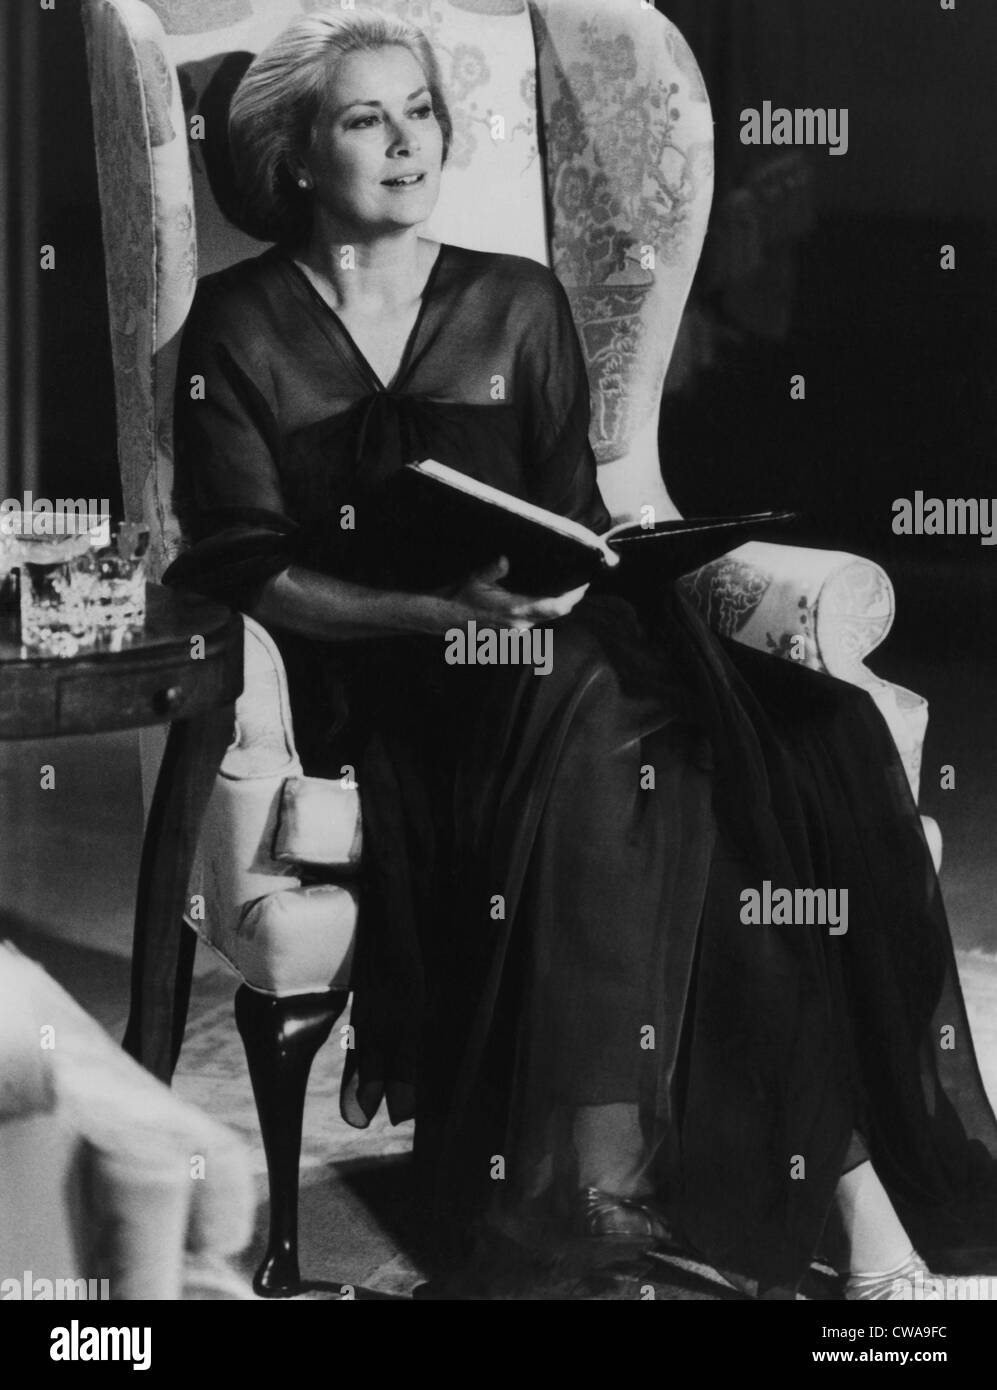 Fürstin Gracia Patricia von Monaco, geben eine Dichterlesung im Fernsehen, 22. Dezember 1980 ausgestrahlt werden... Höflichkeit: CSU Archive / Stockfoto